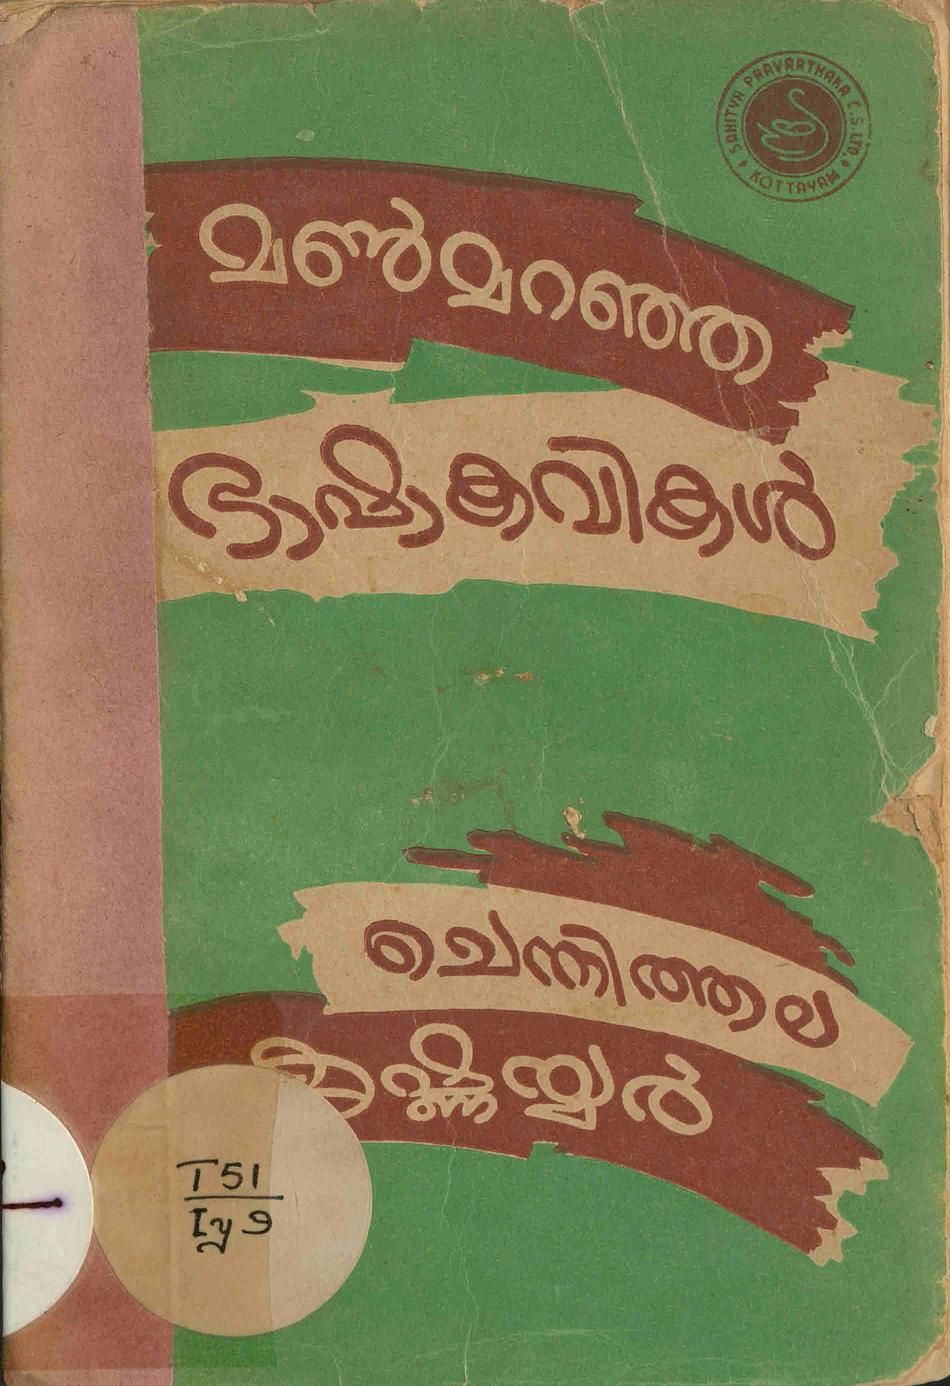  1963 - മൺ മറഞ്ഞ ഭാഷാ കവികൾ (ഒന്നാം ഭാഗം) - ചെന്നിത്തല കൃഷ്ണയ്യർ.